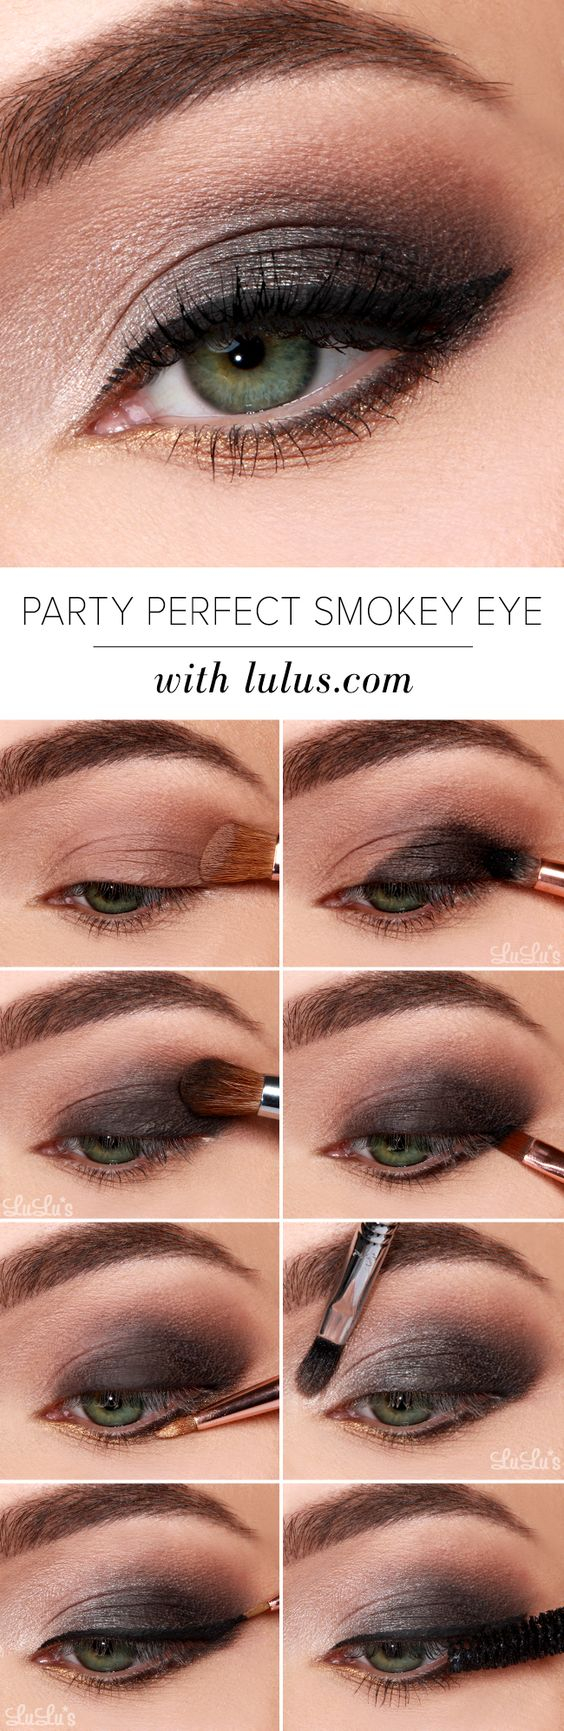 How To Smokey Eye Makeup 40 Hottest Smokey Eye Makeup Ideas 2019 Smokey Eye Tutorials For